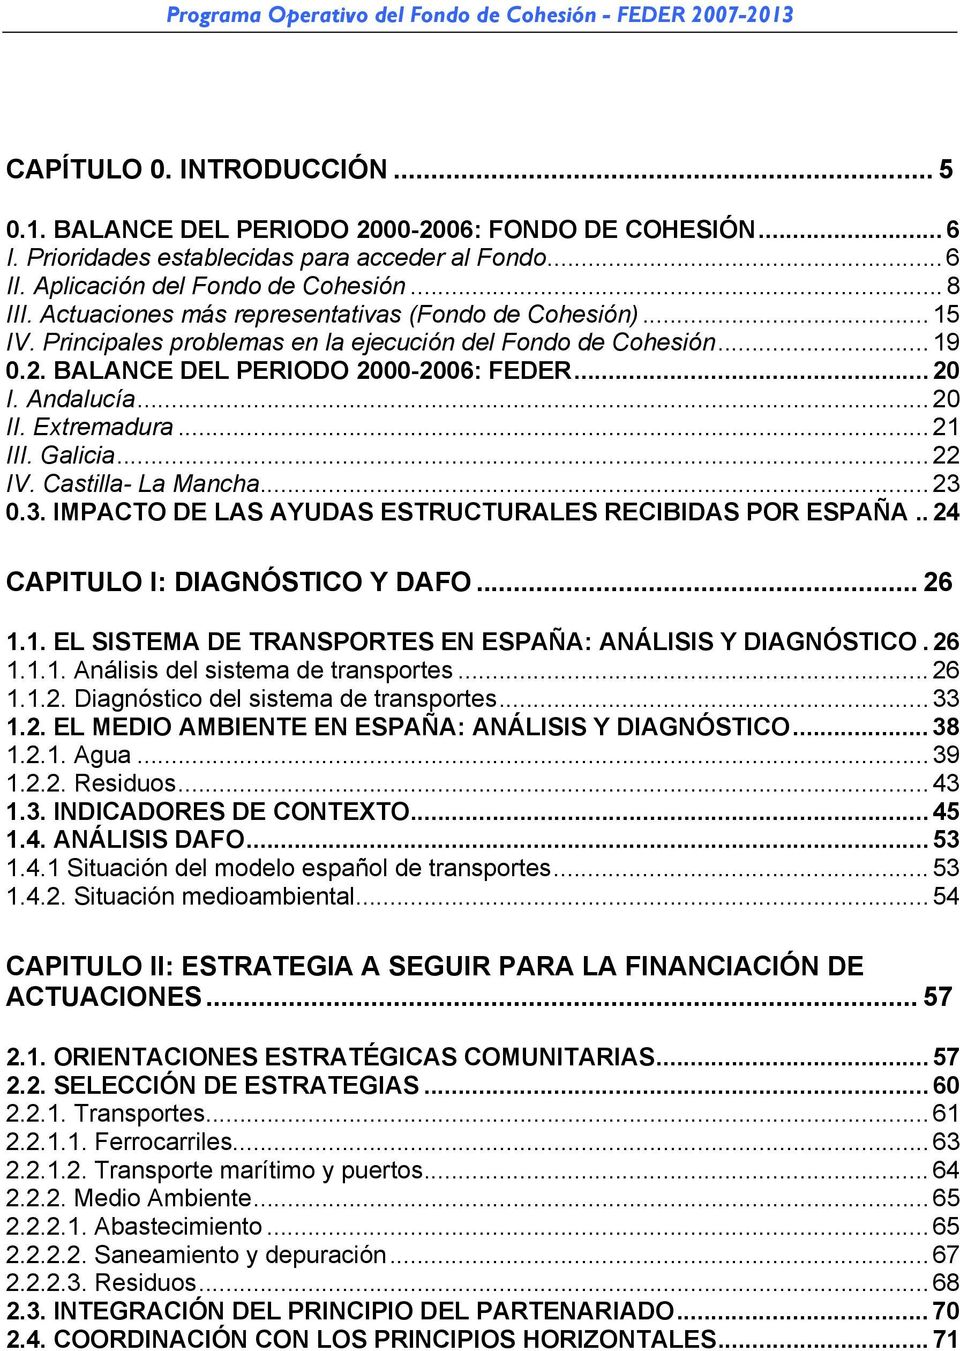 BALANCE DEL PERIODO 2000-2006: FEDER... 20 I. Andalucía... 20 II. Extremadura... 21 III. Galicia... 22 IV. Castilla- La Mancha... 23 0.3. IMPACTO DE LAS AYUDAS ESTRUCTURALES RECIBIDAS POR ESPAÑA.